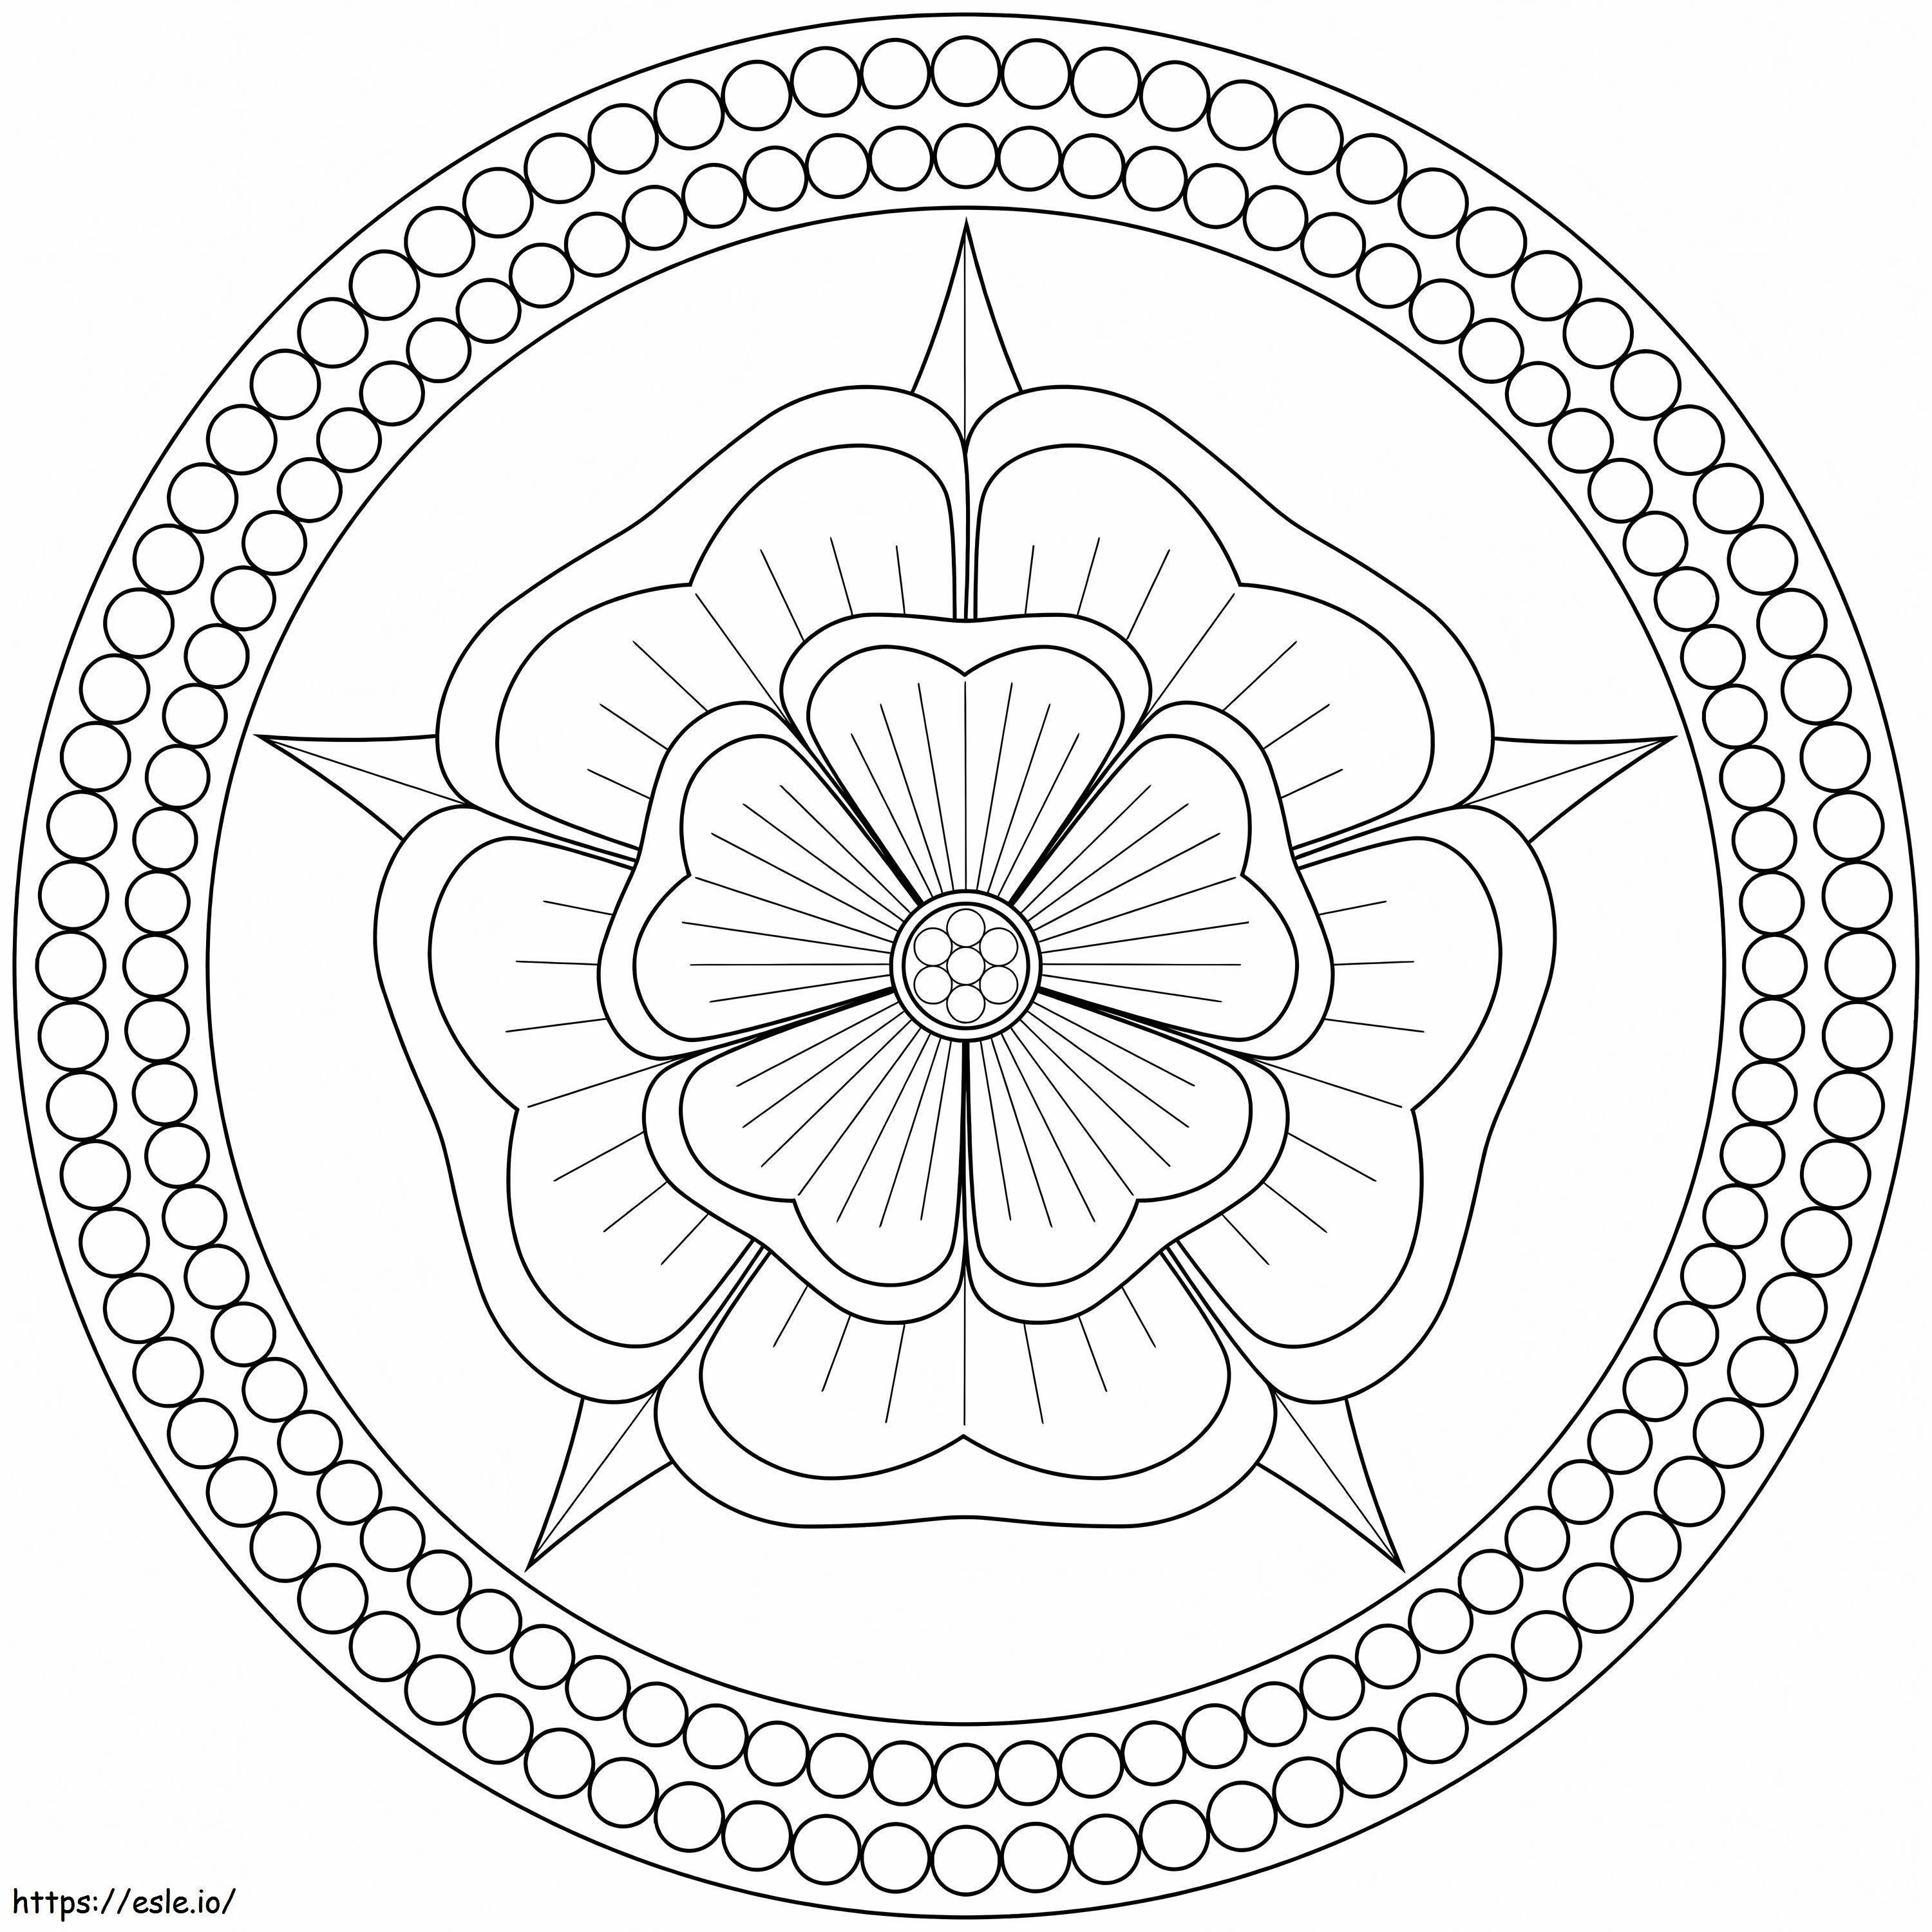 Blumen-Mandala-Kreis ausmalbilder